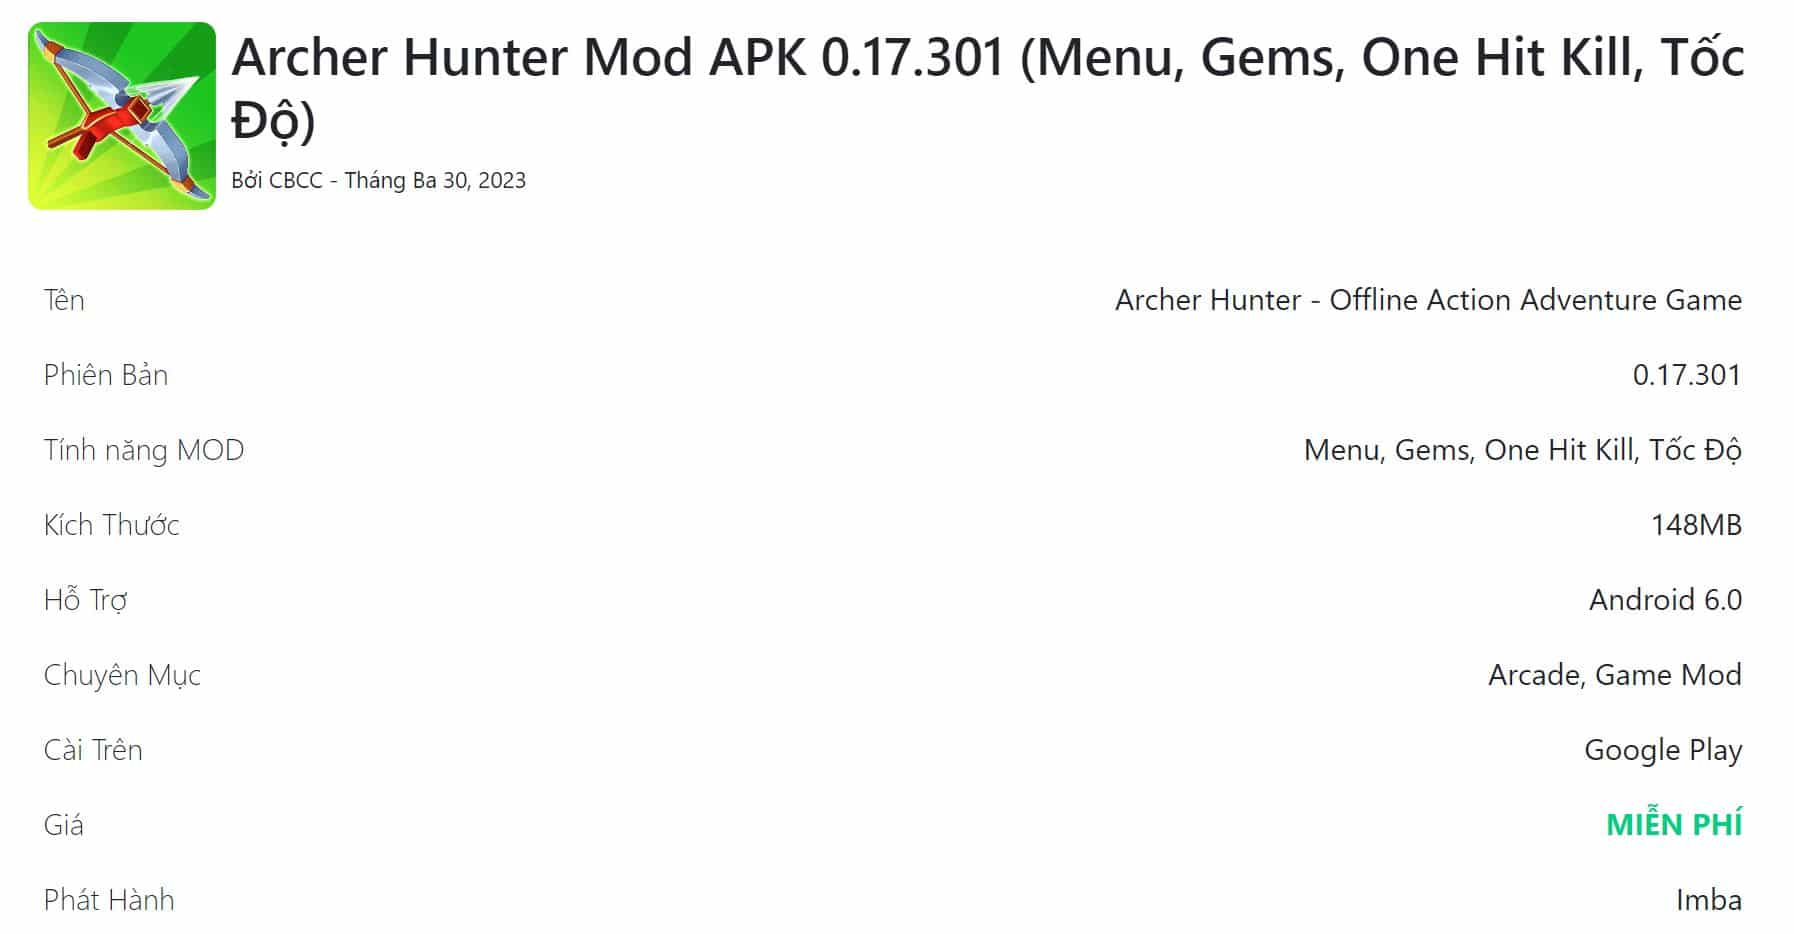 Archer Hunter Mod APK 0.17.301